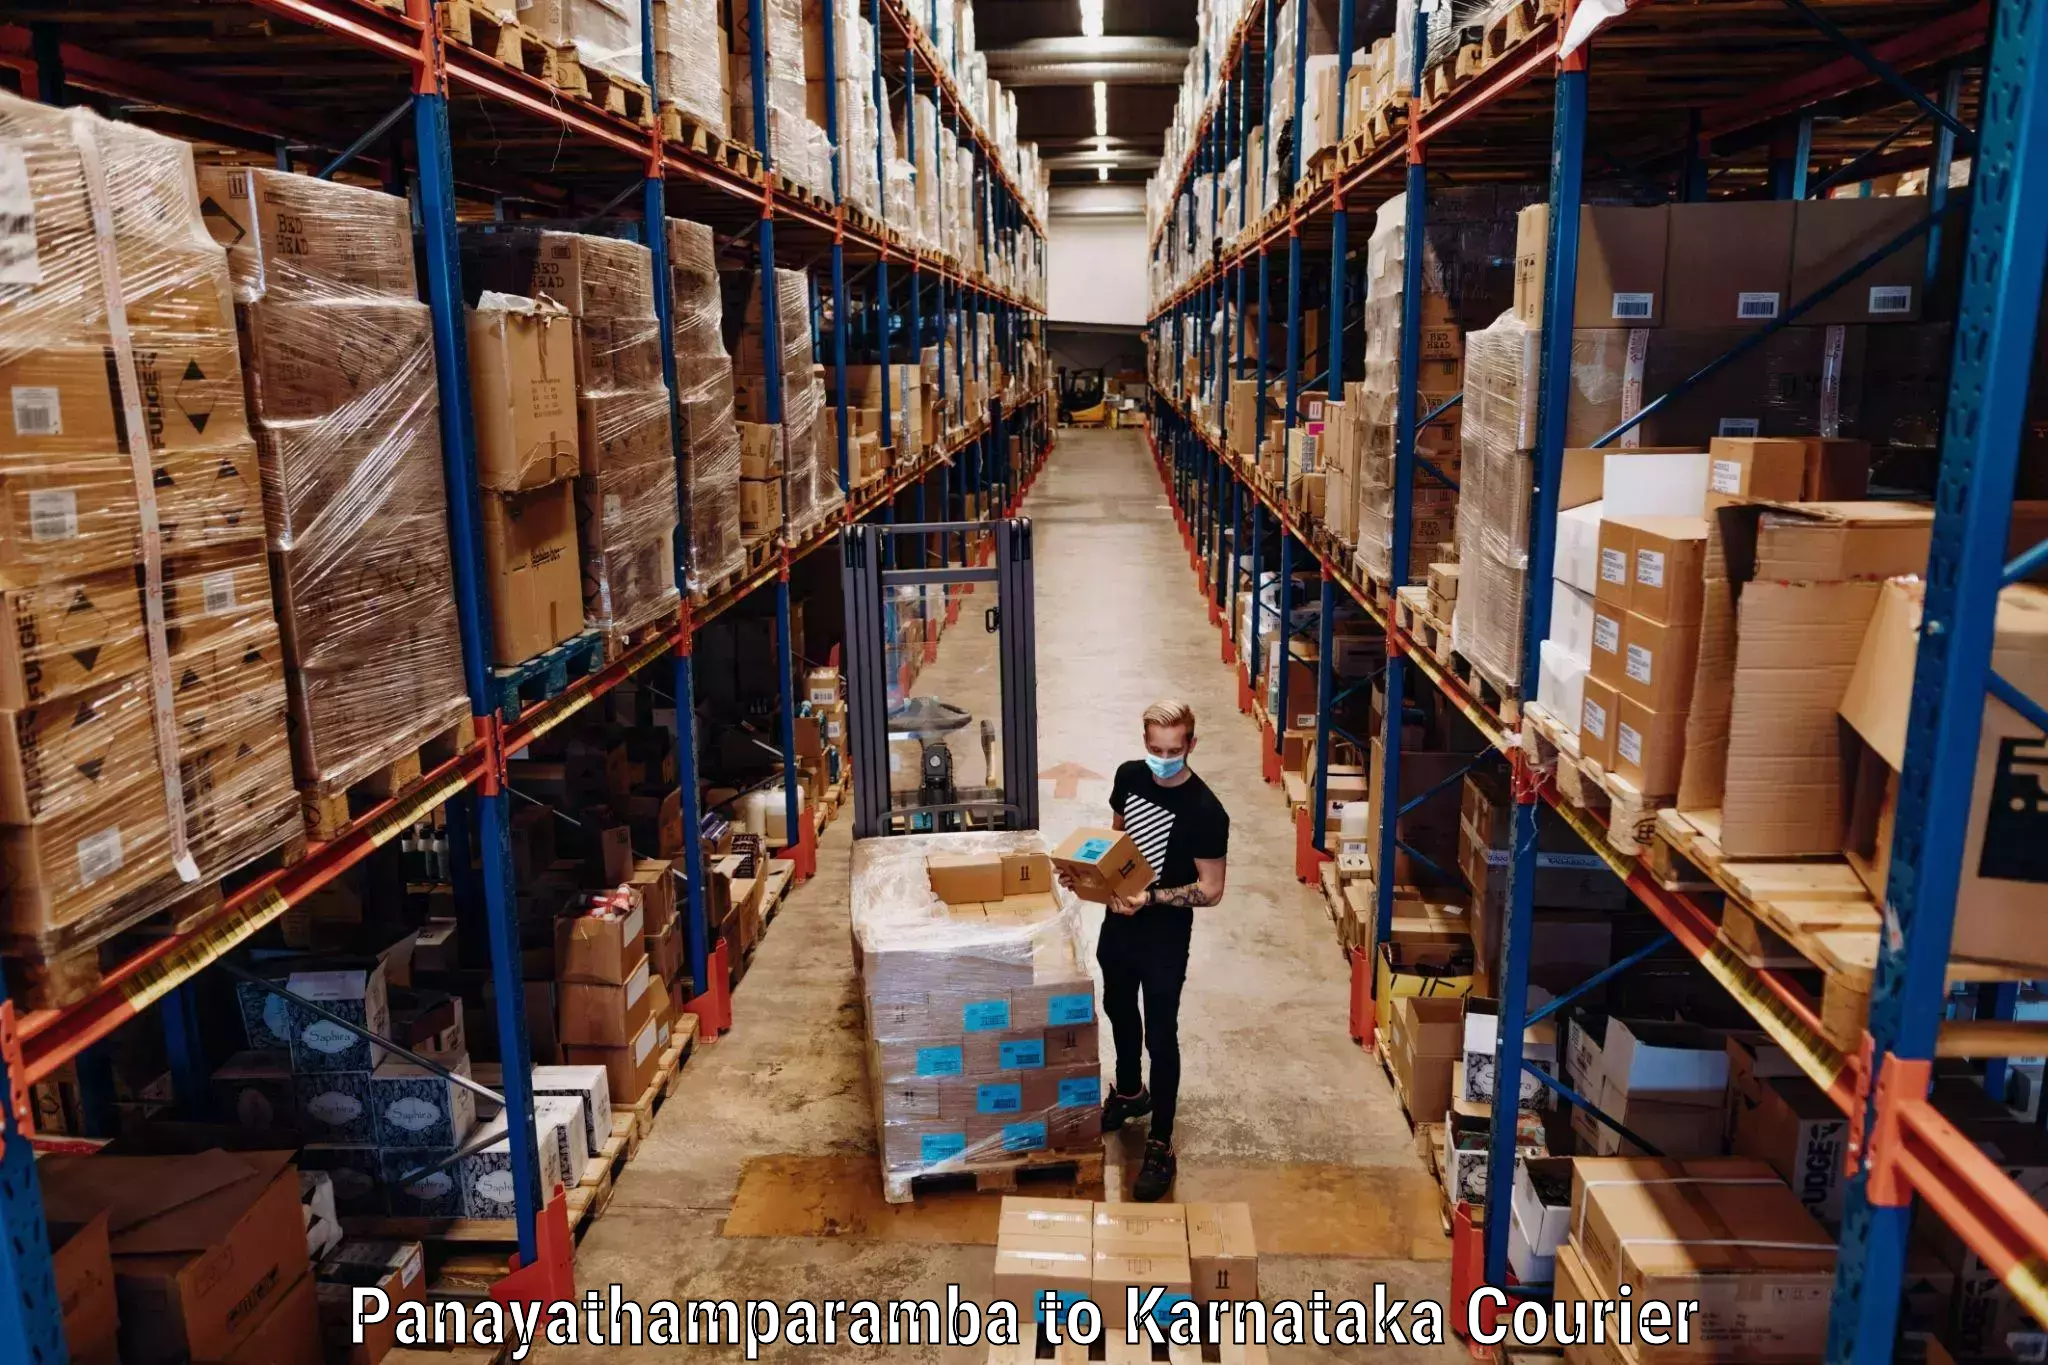 Luggage delivery network Panayathamparamba to Tumkur